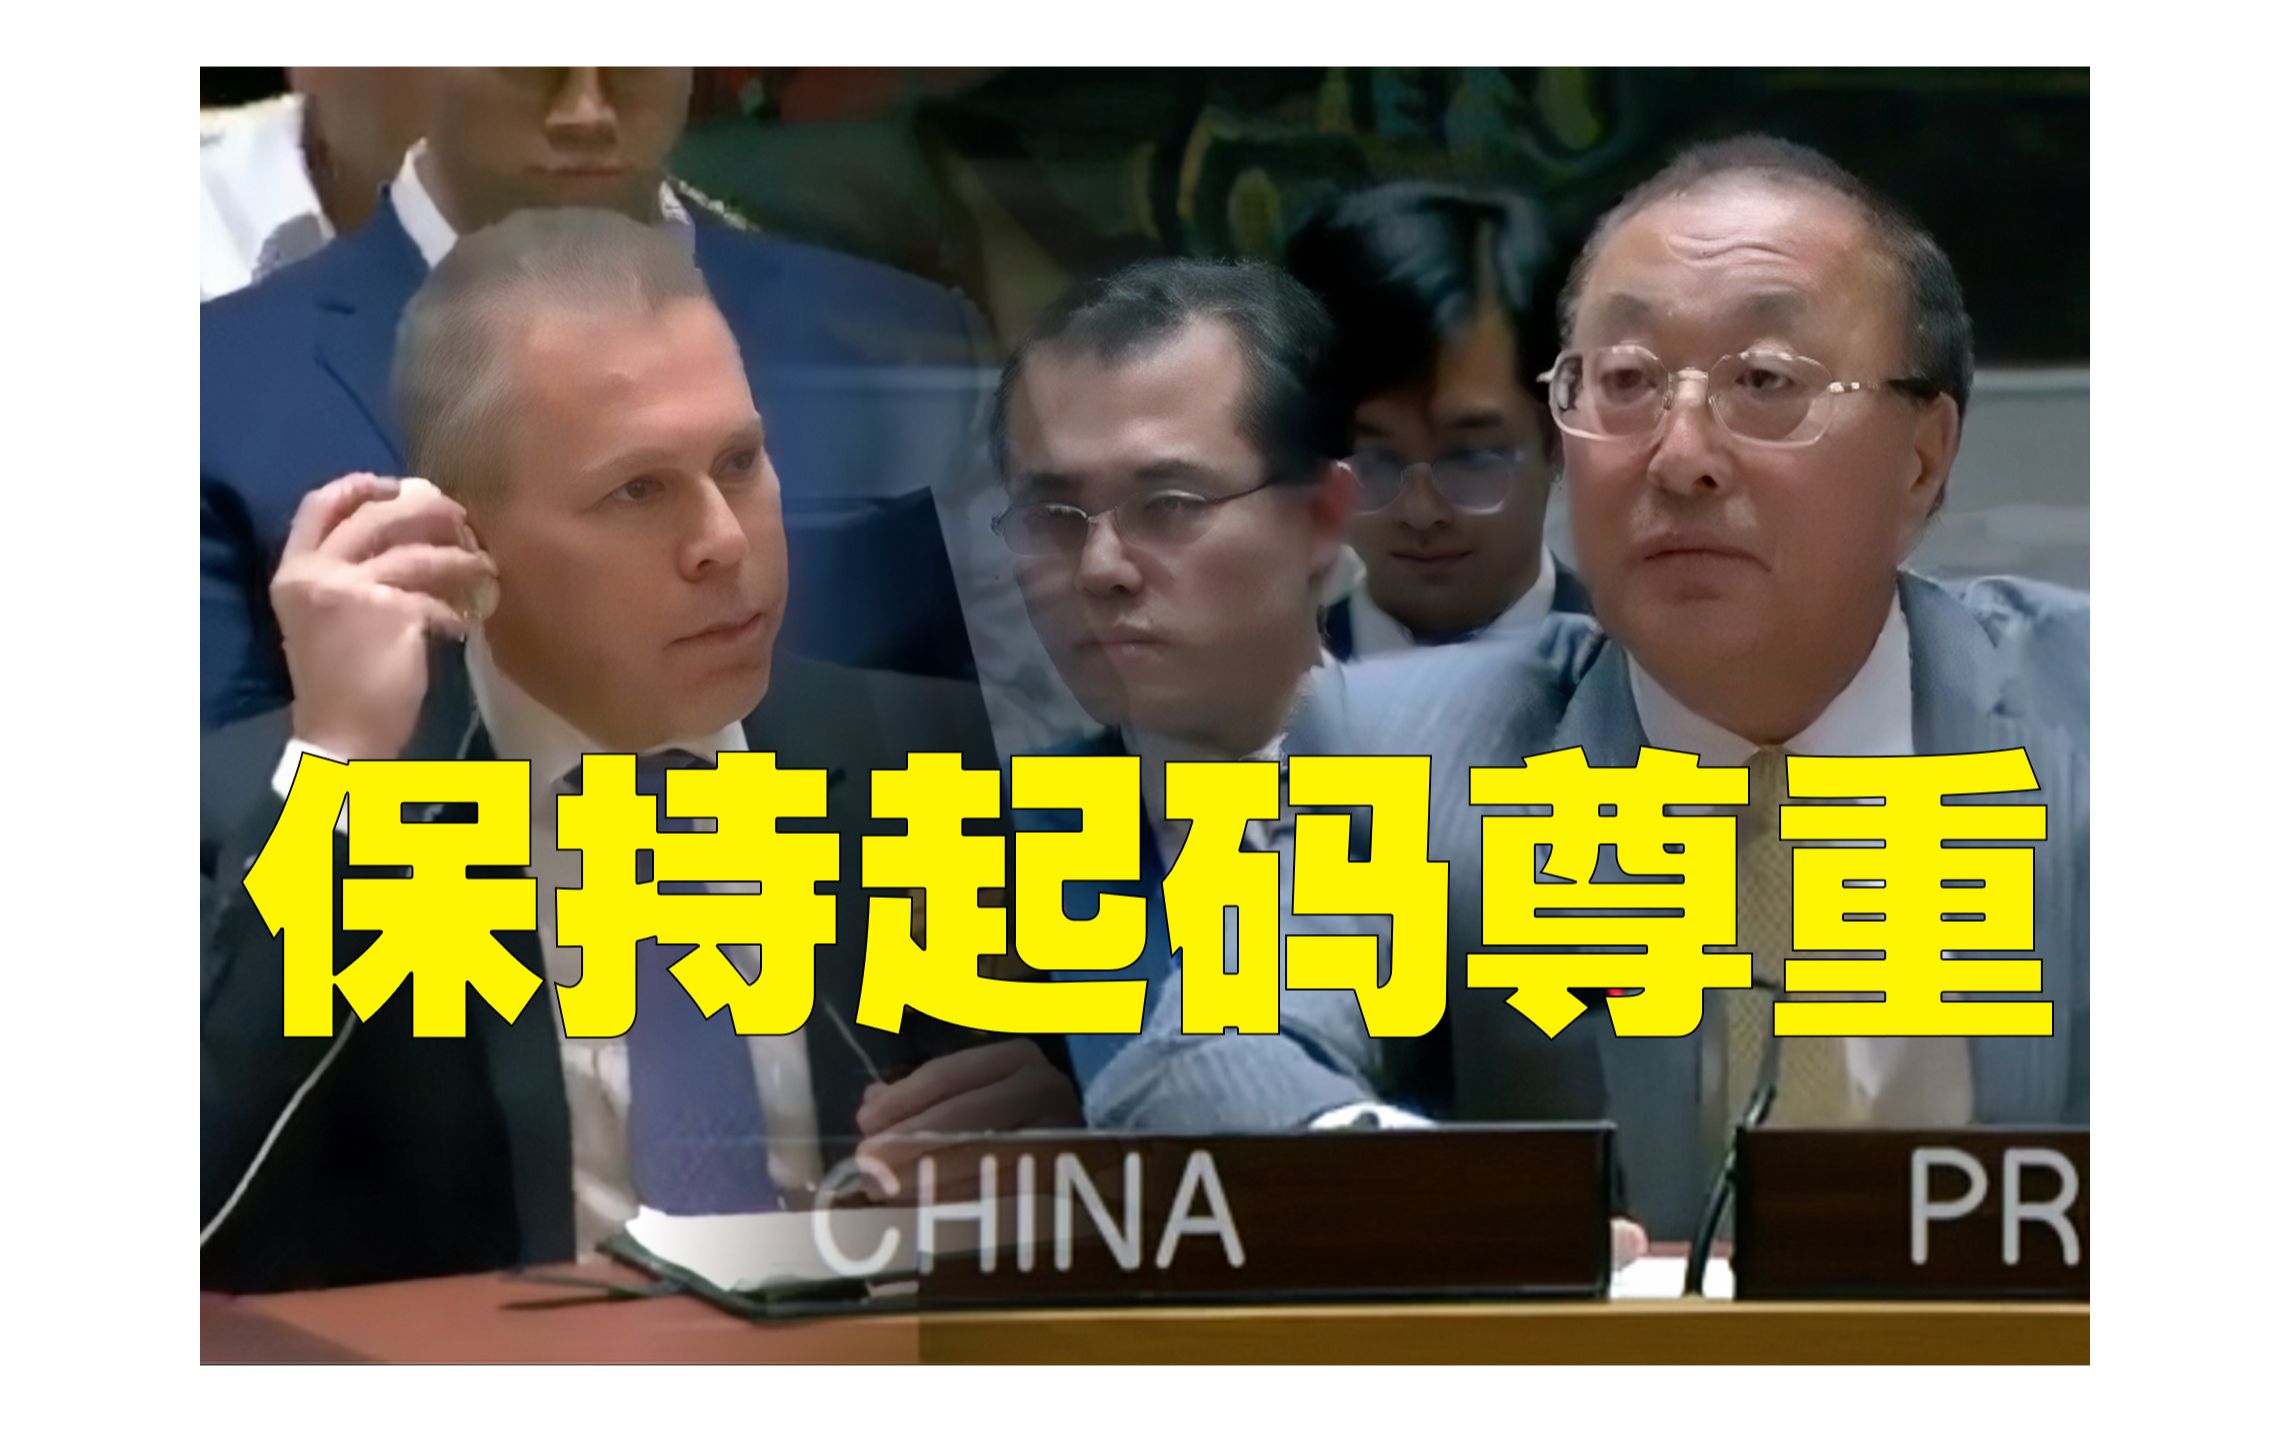 中国大使制止以色列代表爆粗口：“请保持起码的尊重”